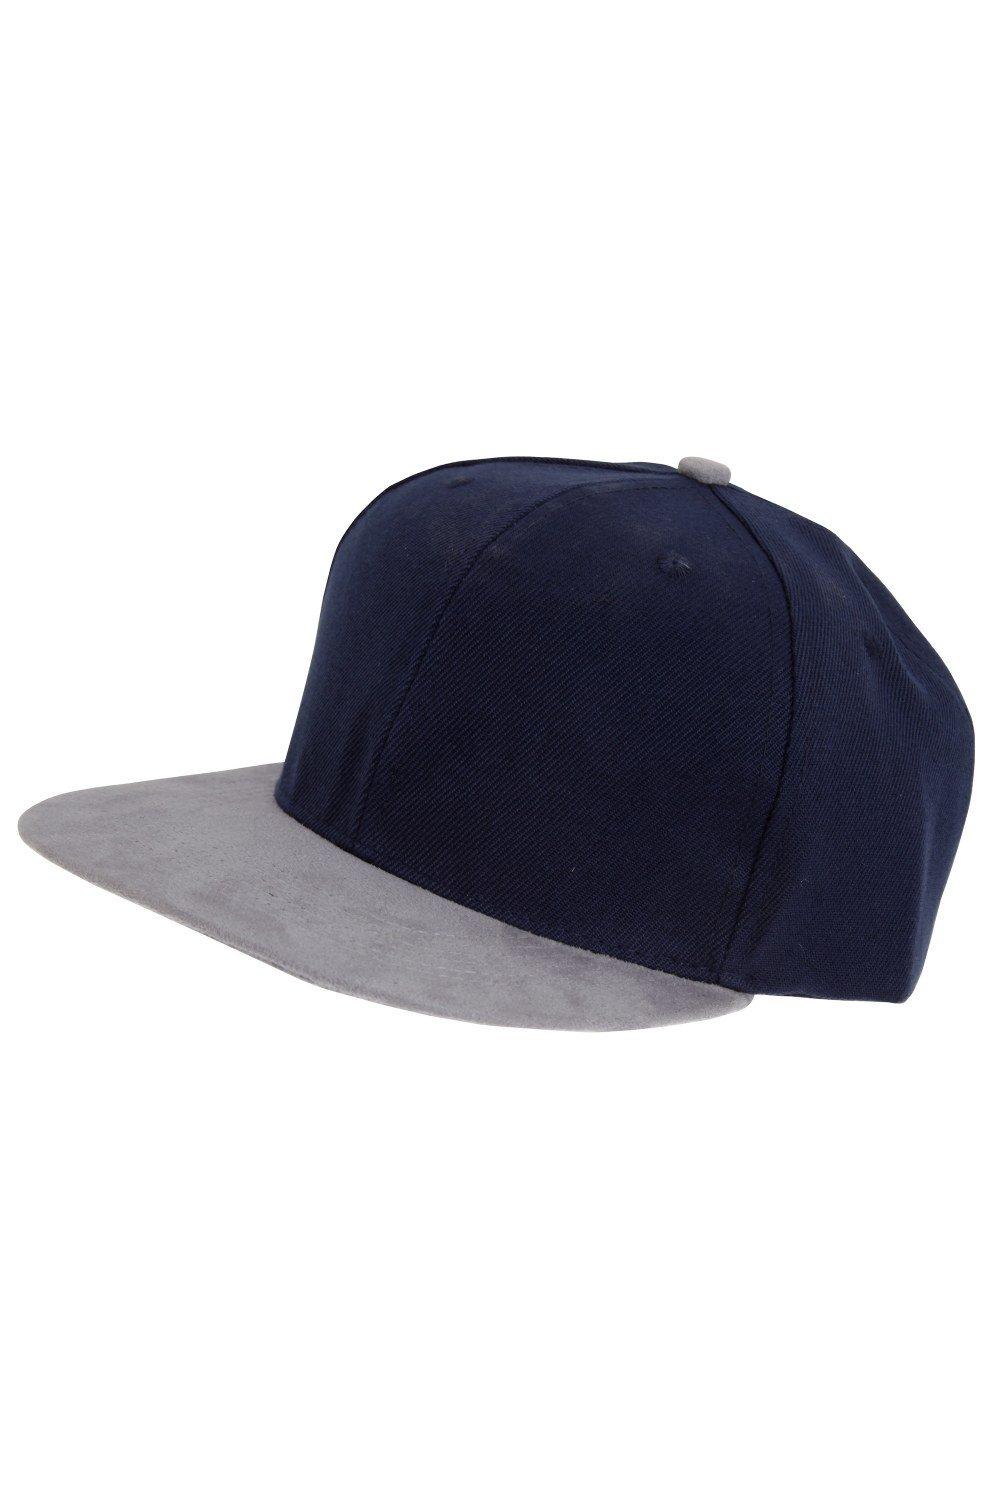 Бейсбольная кепка Snapback Tom Franks, темно-синий бейсбольная кепка snapback с логотипом q band queen черный